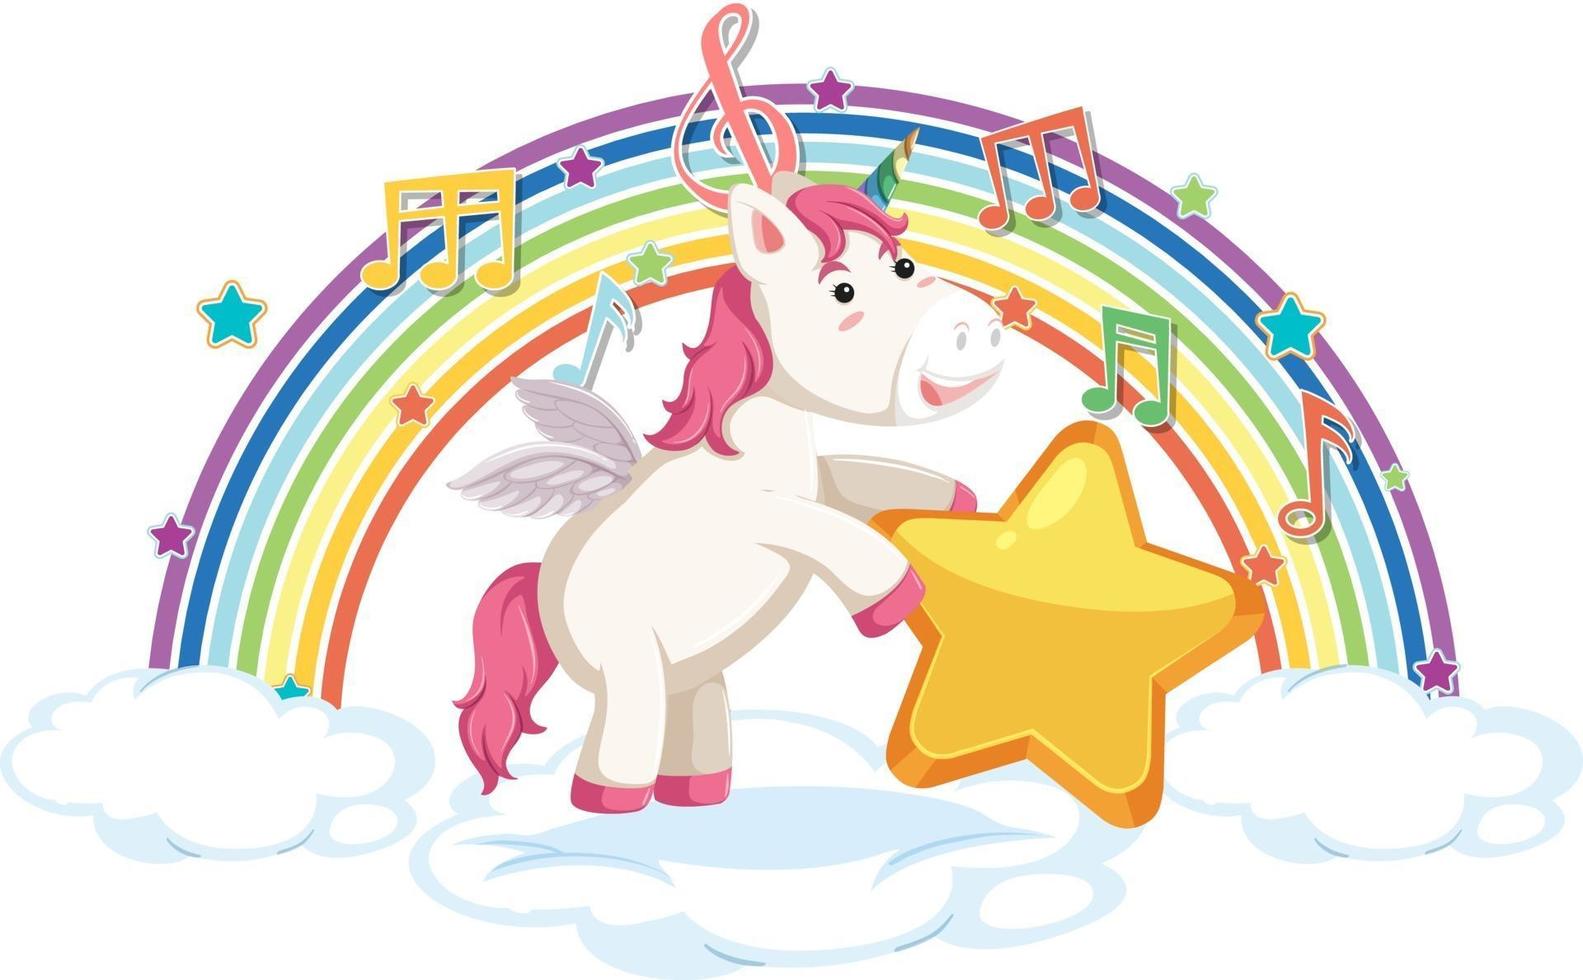 unicorno in piedi su nuvola con simbolo arcobaleno e melodia vettore